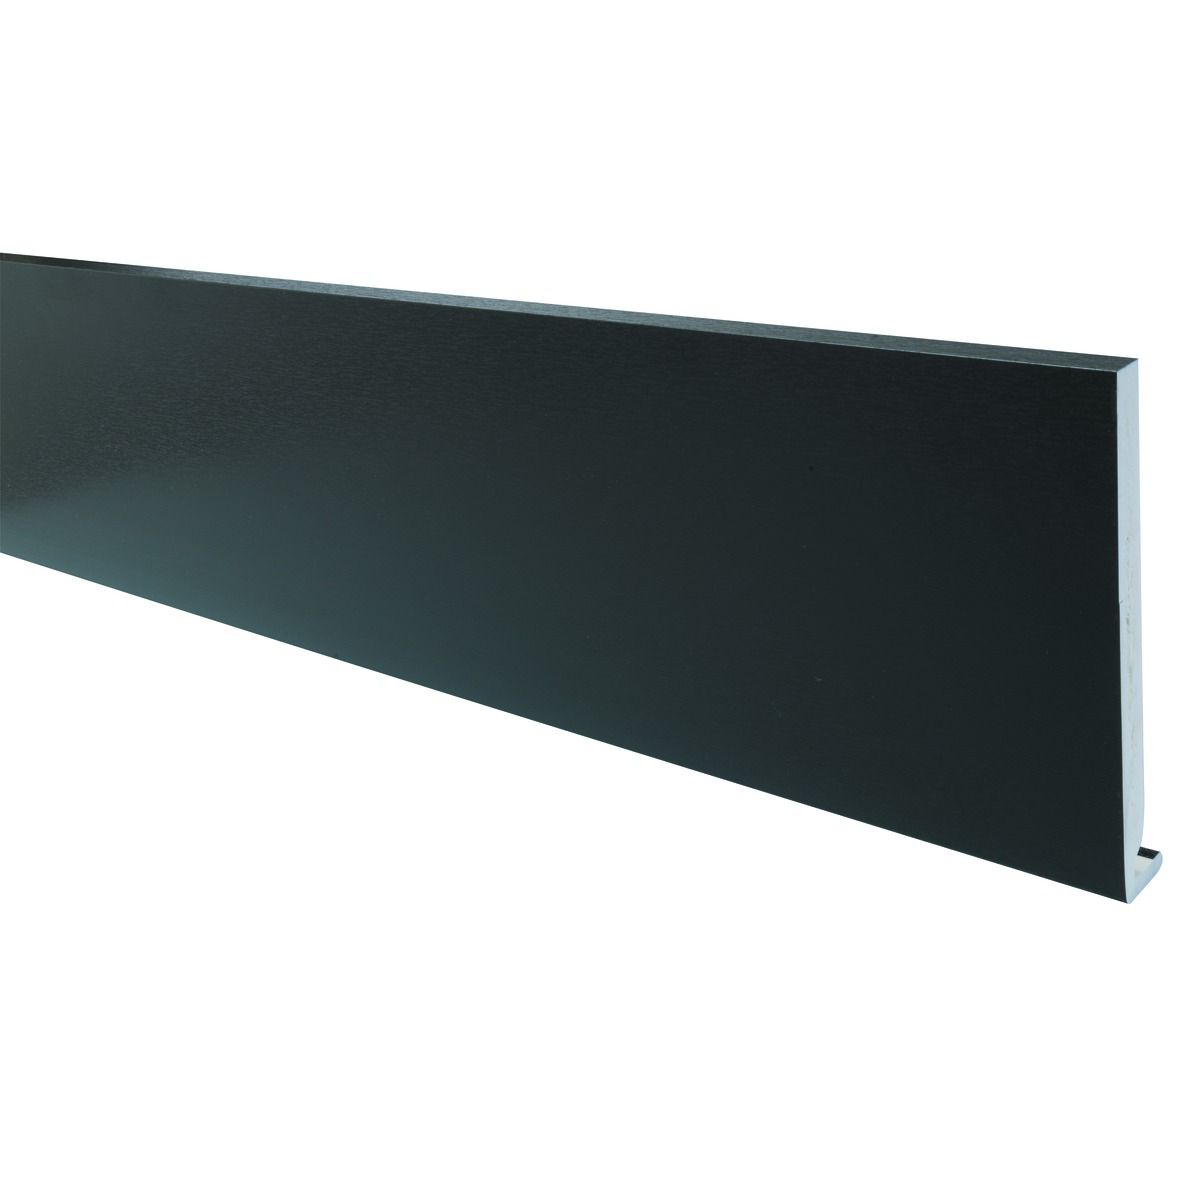 Image of Wickes PVCu Black Fascia Board 18 x 175 x 4000mm